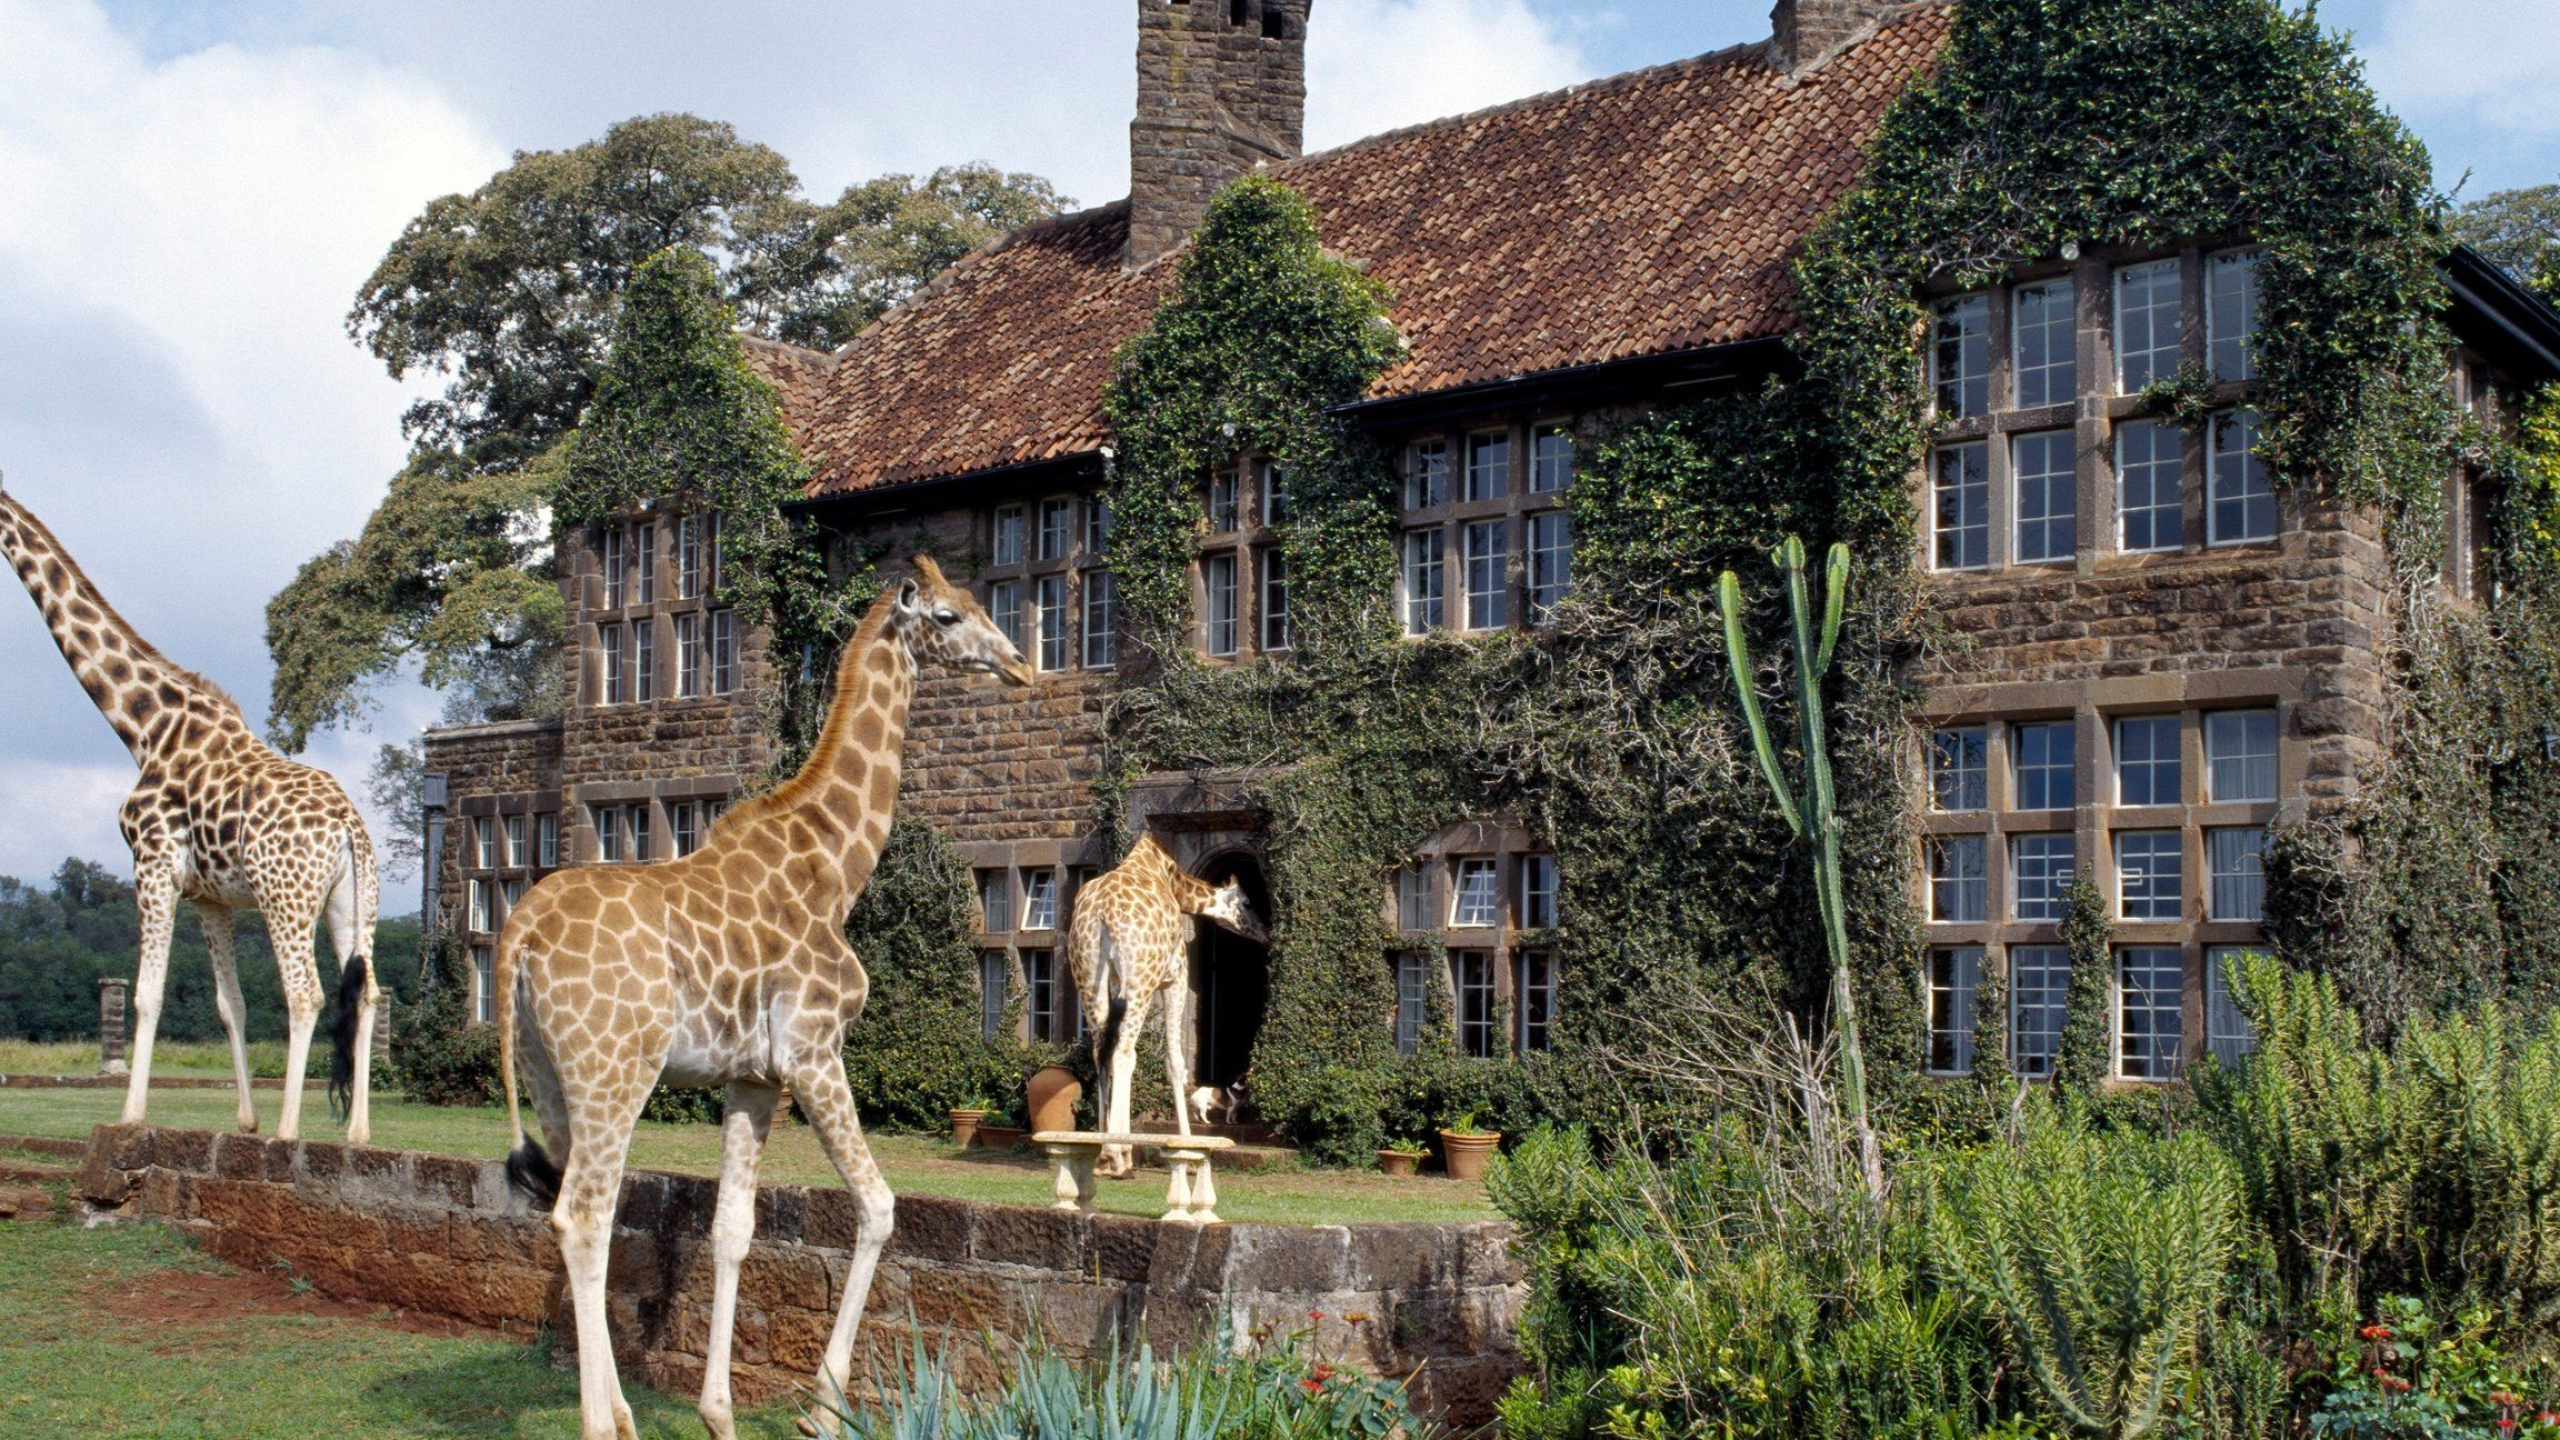 Hotel animal. Отель Жираф Манор в Кении. Giraffe Manor Найроби, Кения. Поместье Жирафов (Giraffe Manor),. Giraffe Manor (усадьба Жирафов), Кения.